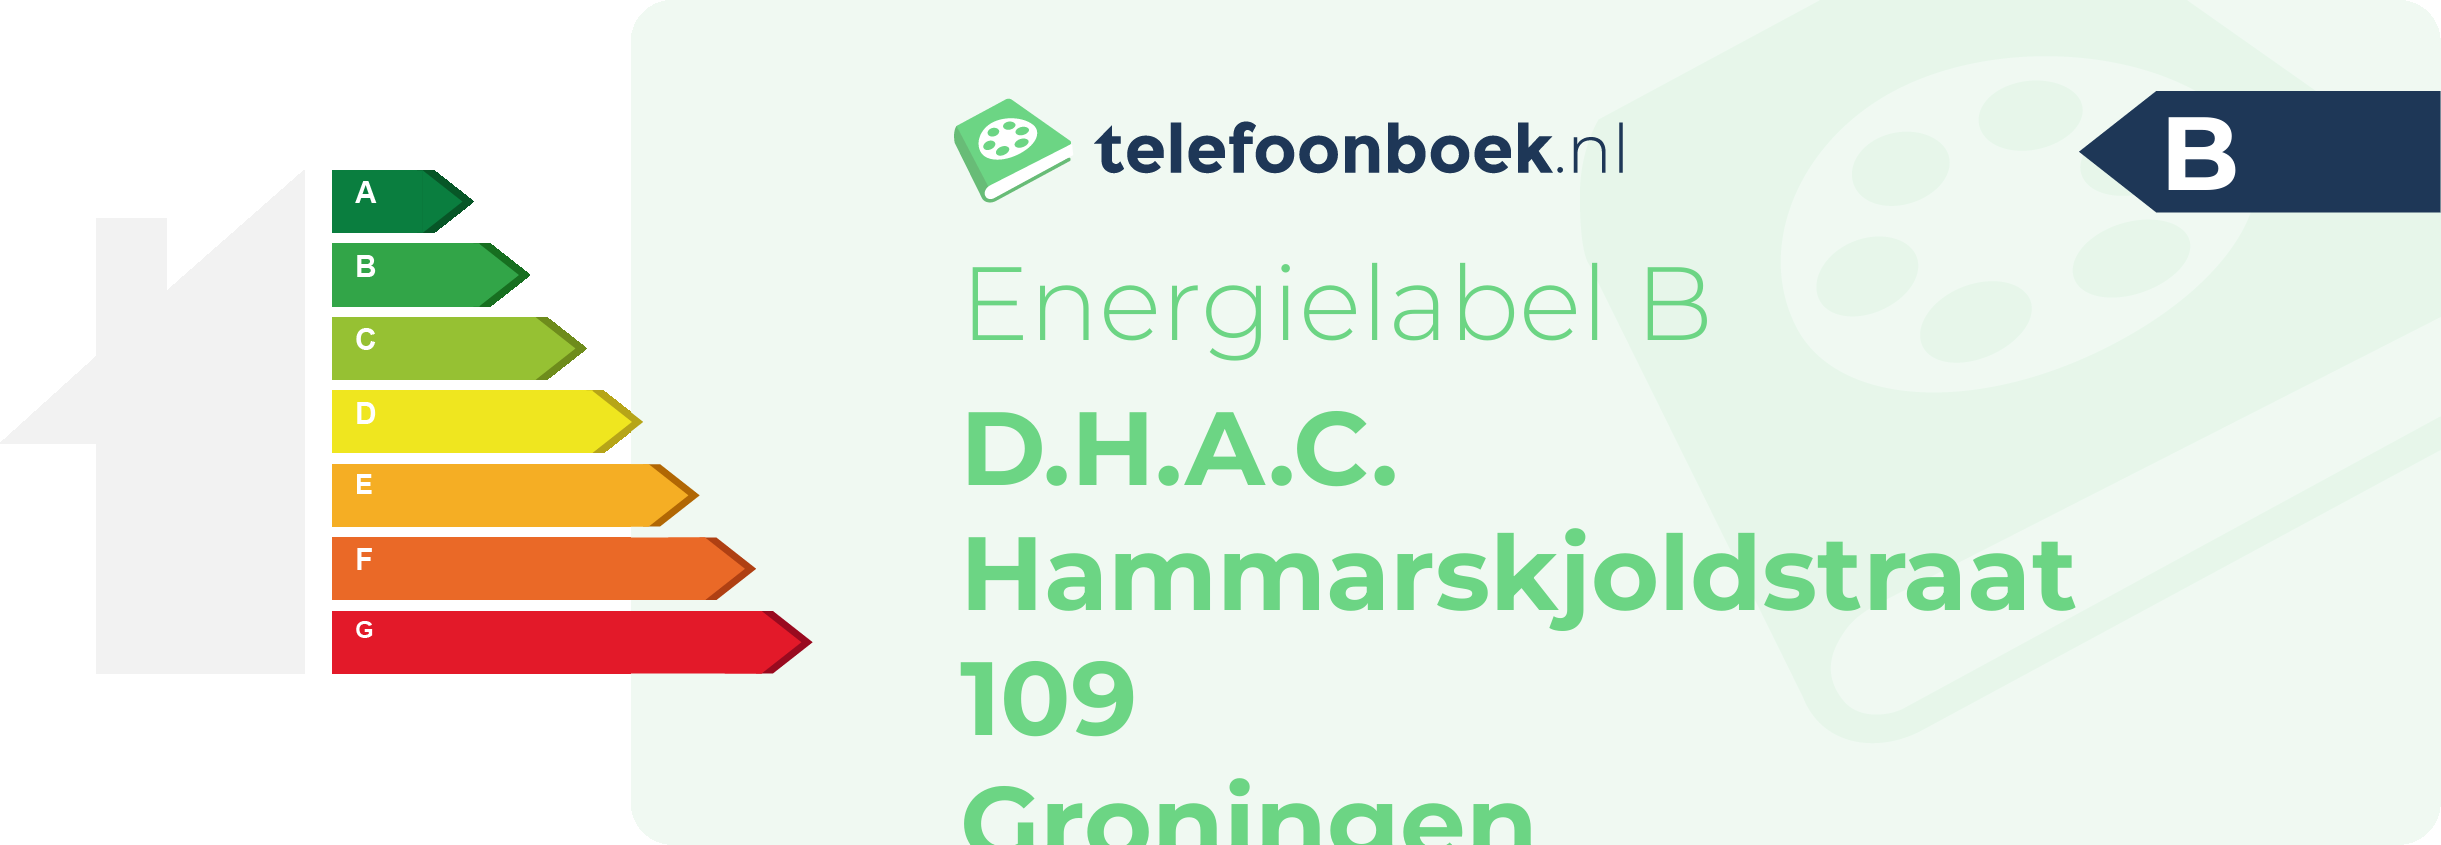 Energielabel D.H.A.C. Hammarskjoldstraat 109 Groningen